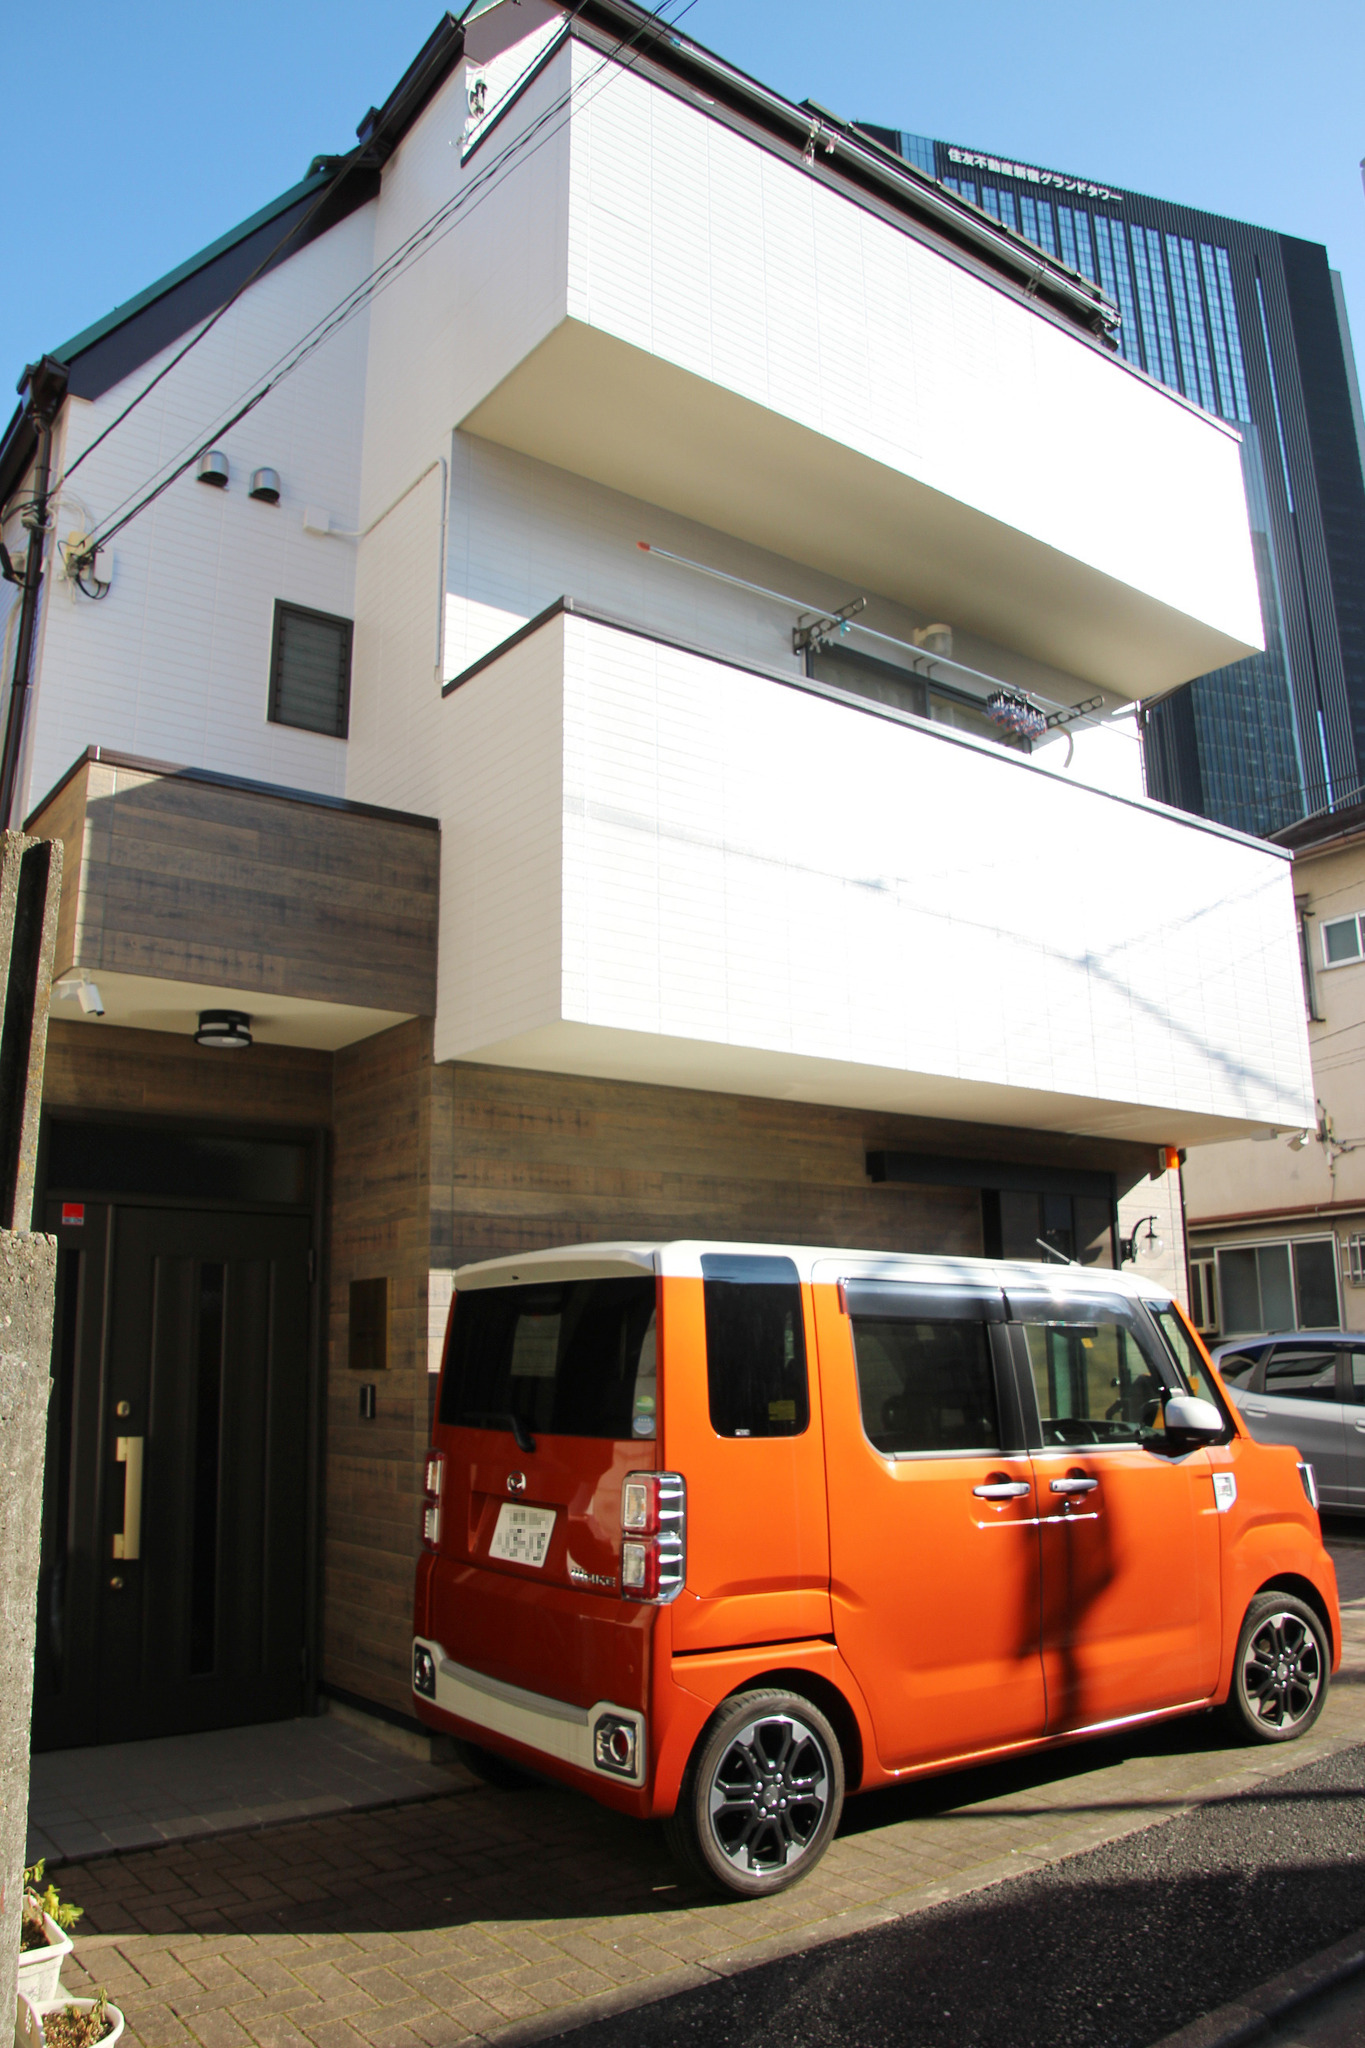 HAMA HILLS 新宿 - 西新宿摩天楼まで徒歩5分・一戸建て3部屋・最大10人